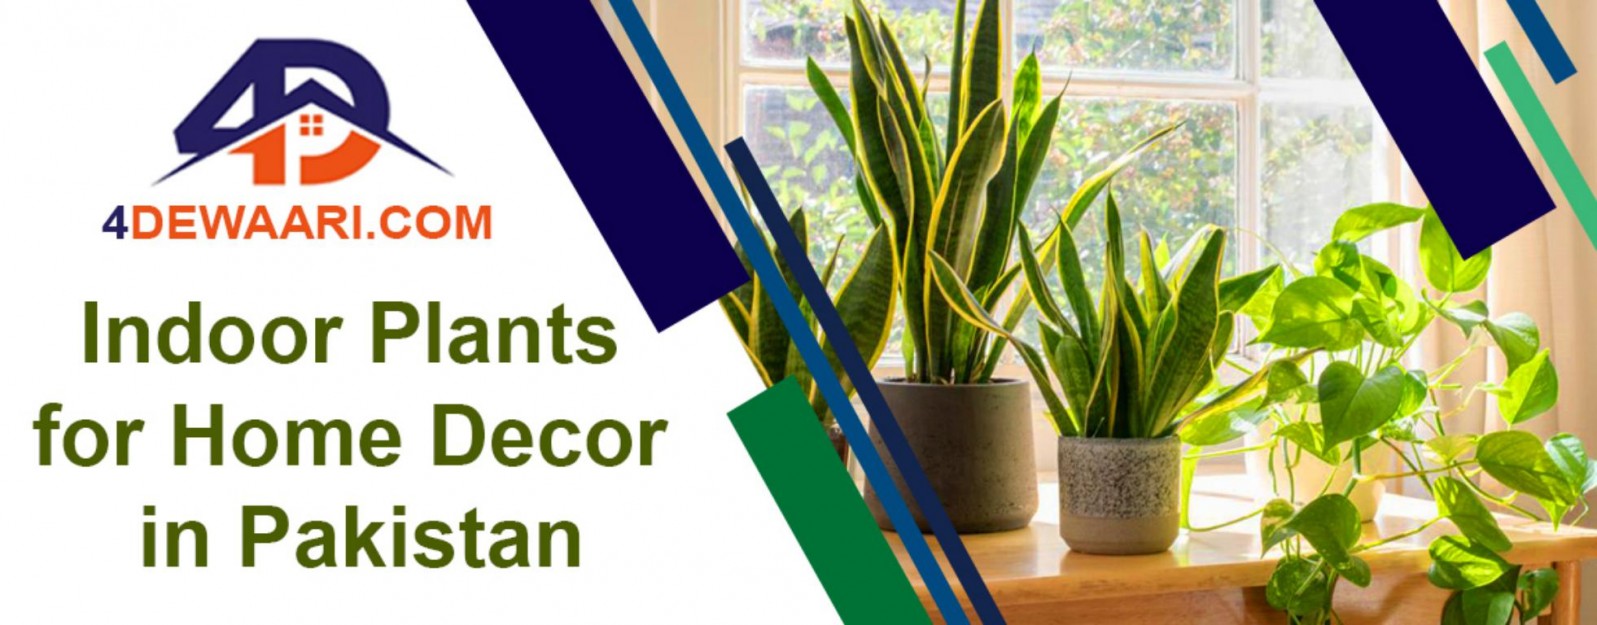 List of Popular Indoor Plants in Pakistan for Home Decor